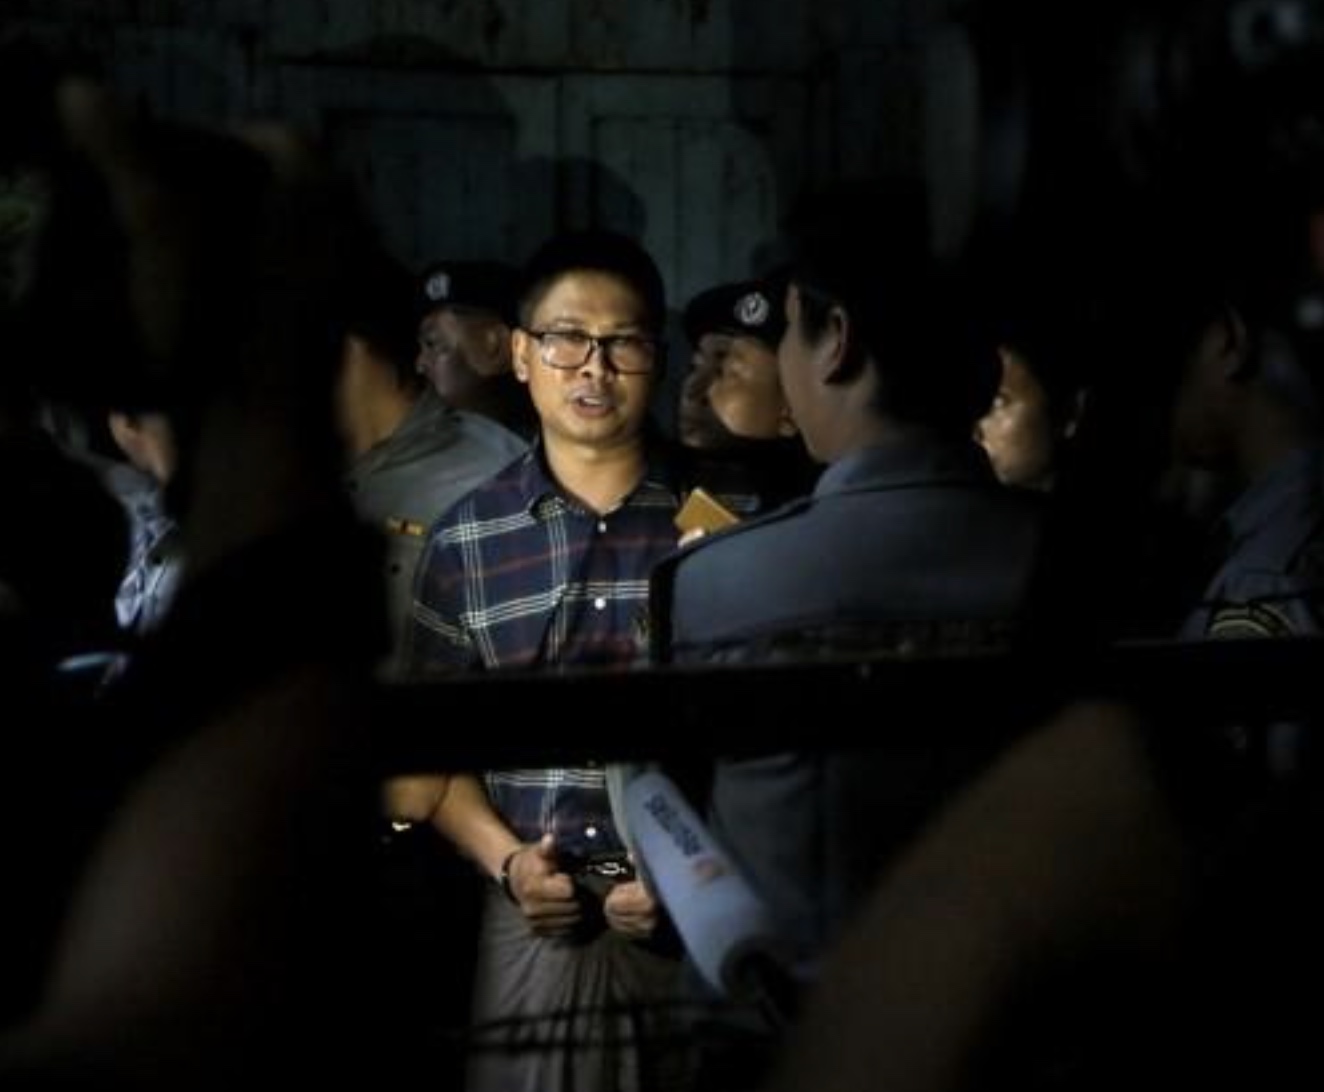 Myanmar Police Focused Interrogation on Rohingya Story: Reuters Journalist